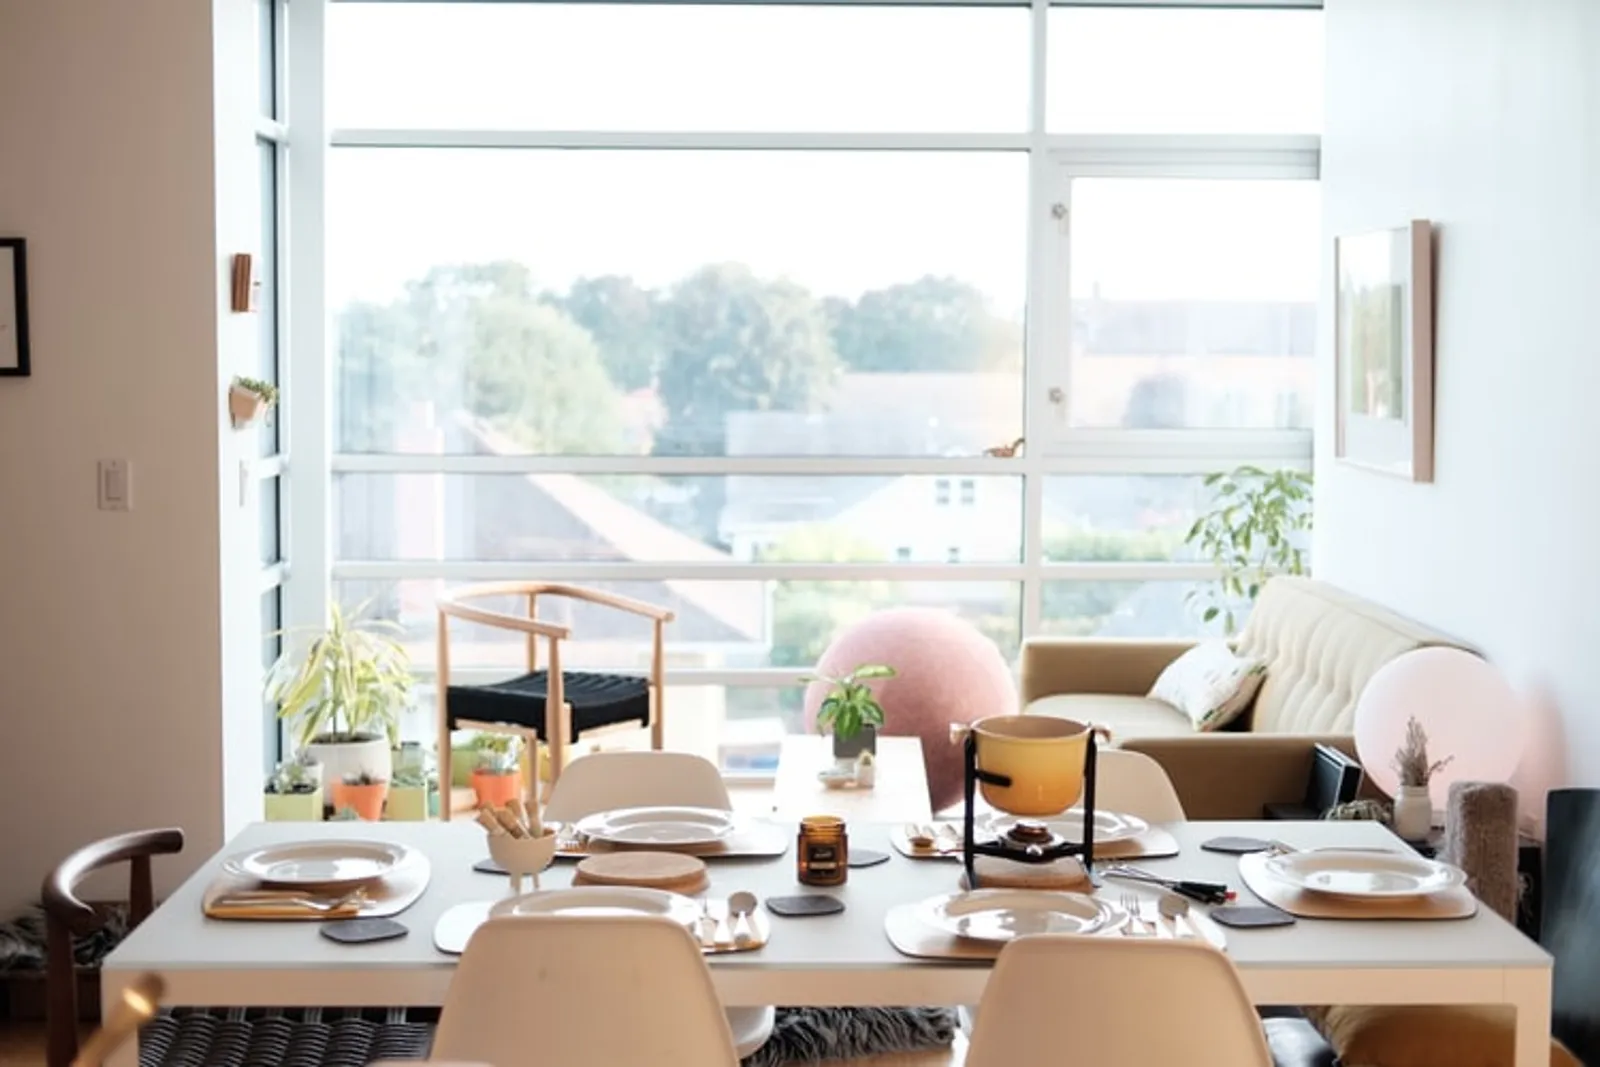 Kekinian, Ini 7 Desain Ruang Makan Minimalis Modern